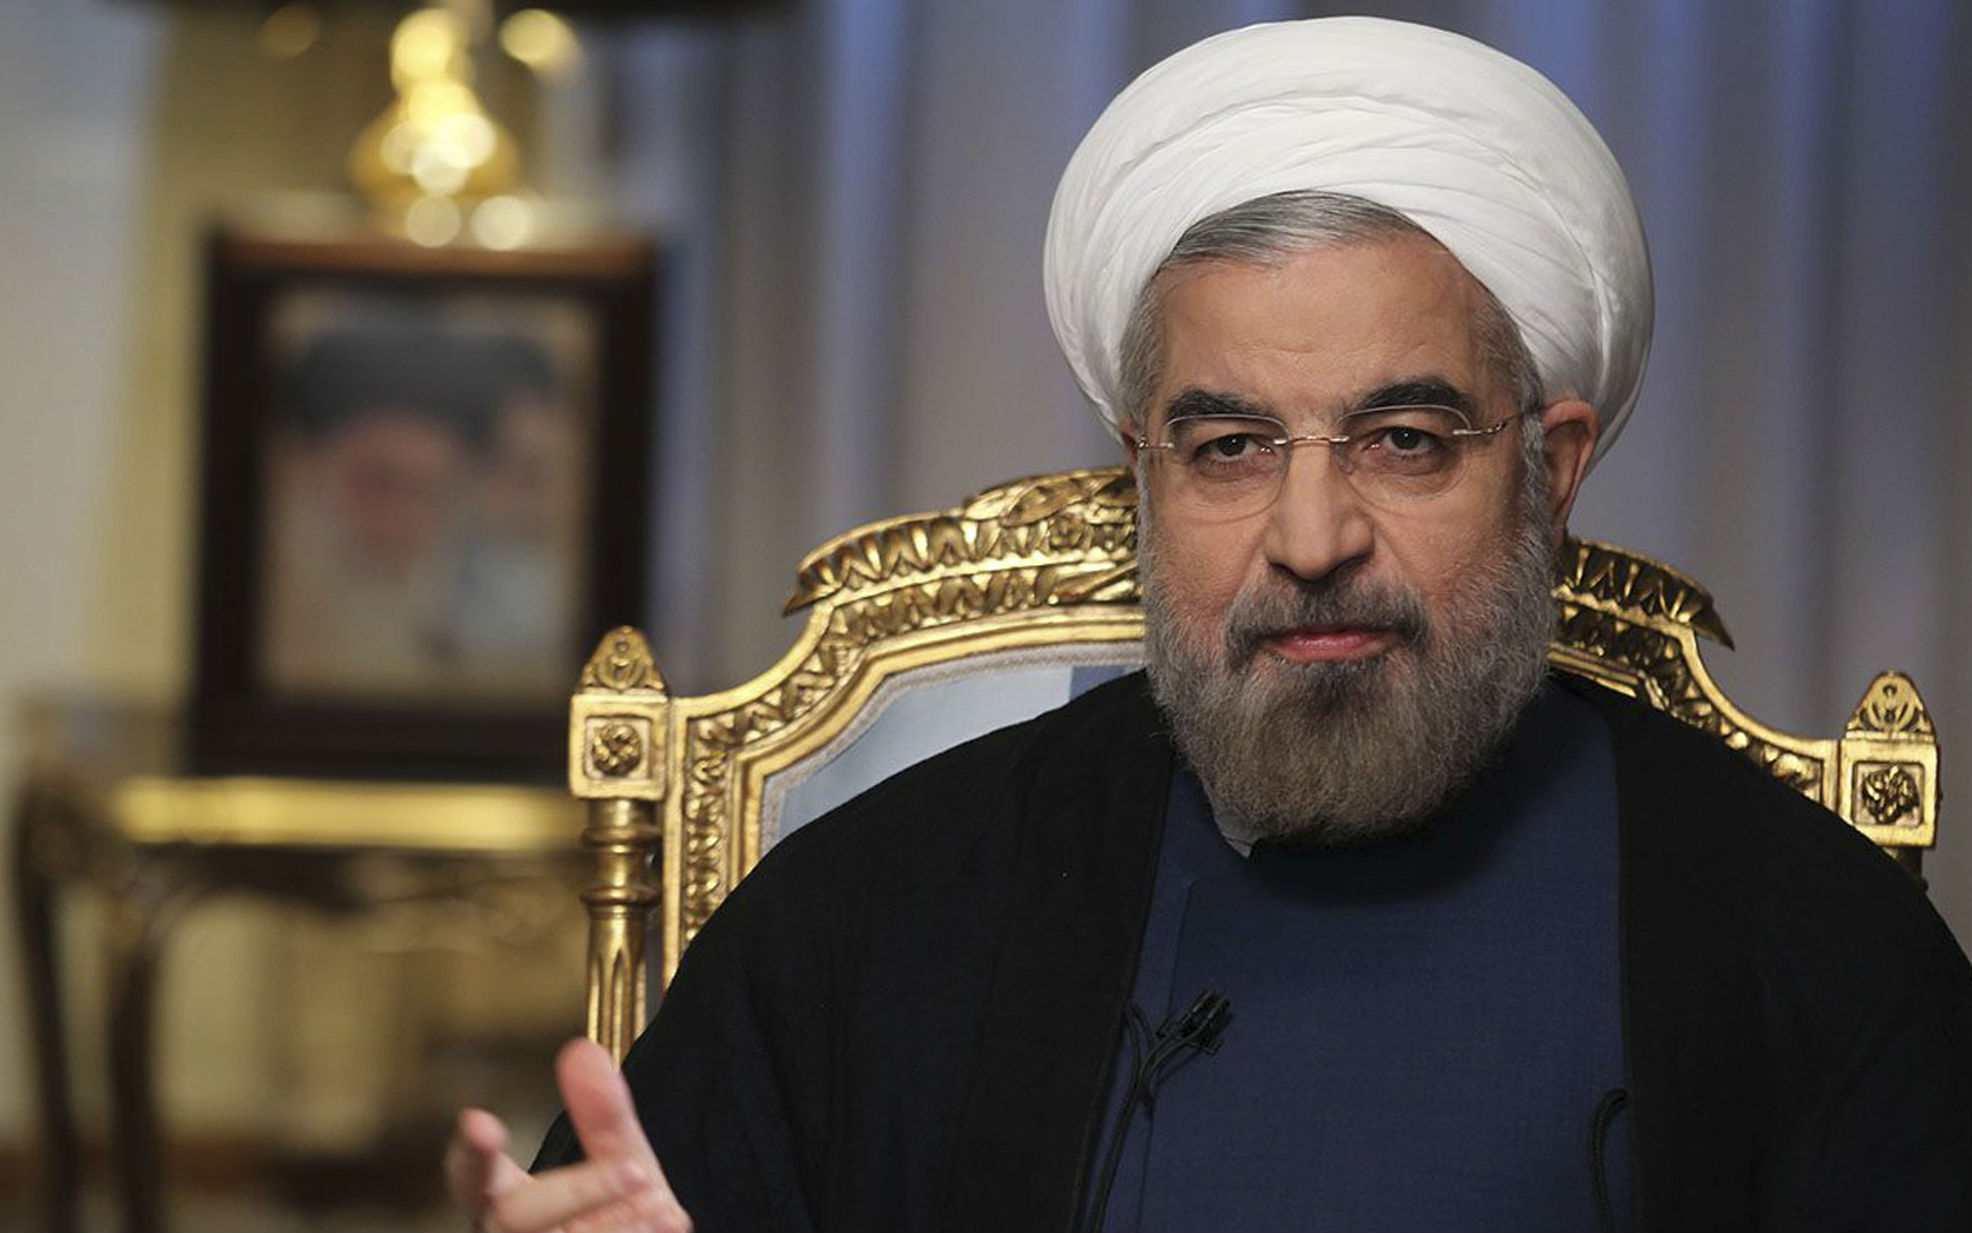 Πρόεδρος του Ιράν: Επιλογή μεταξύ του κακού και του χειρότερου το δίλημμα Κλίντον ή Τραμπ